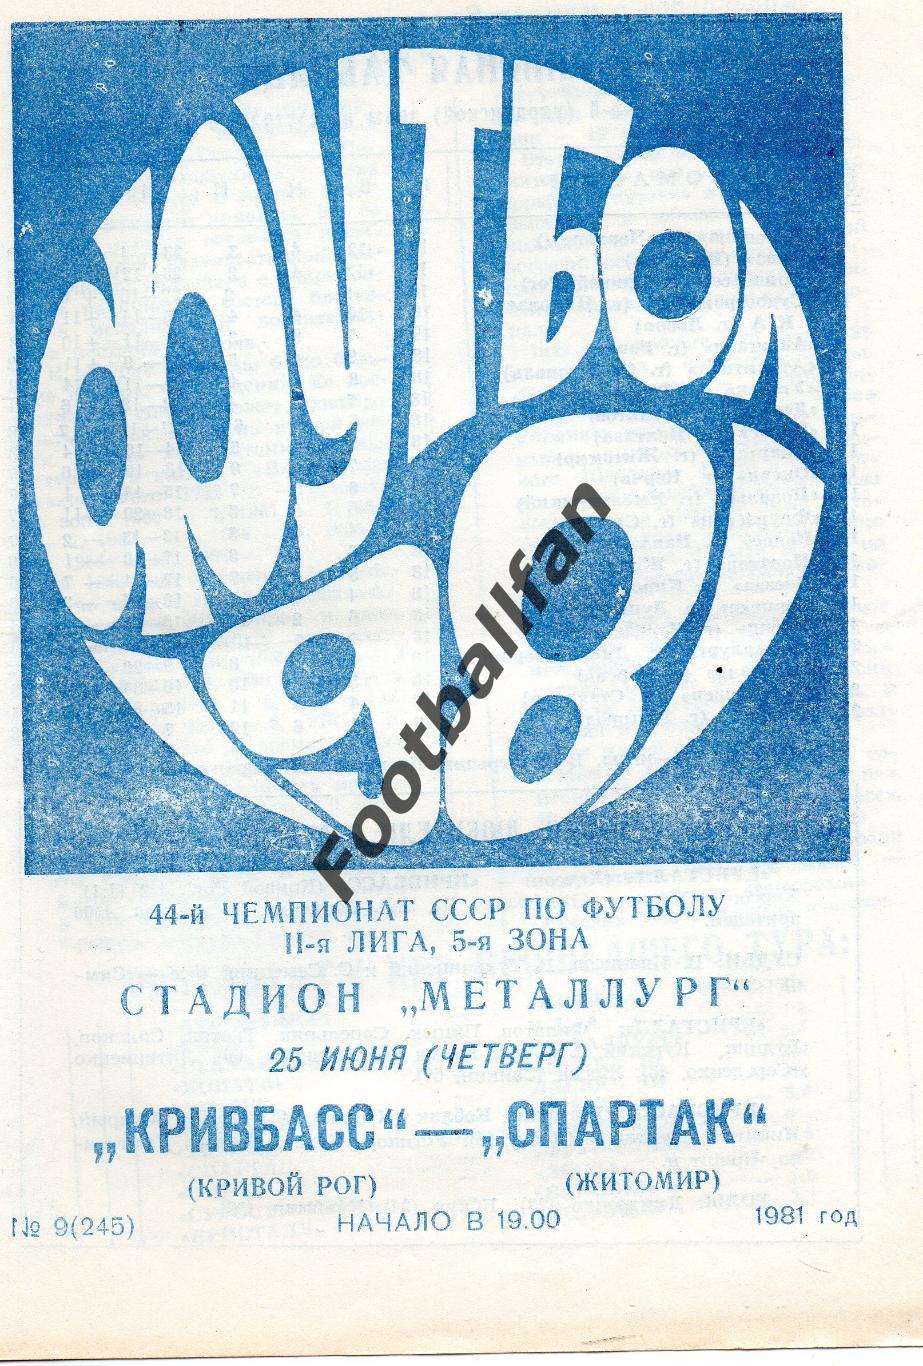 Кривбасс Кривой Рог - Спартак Житомир 25.06.1981